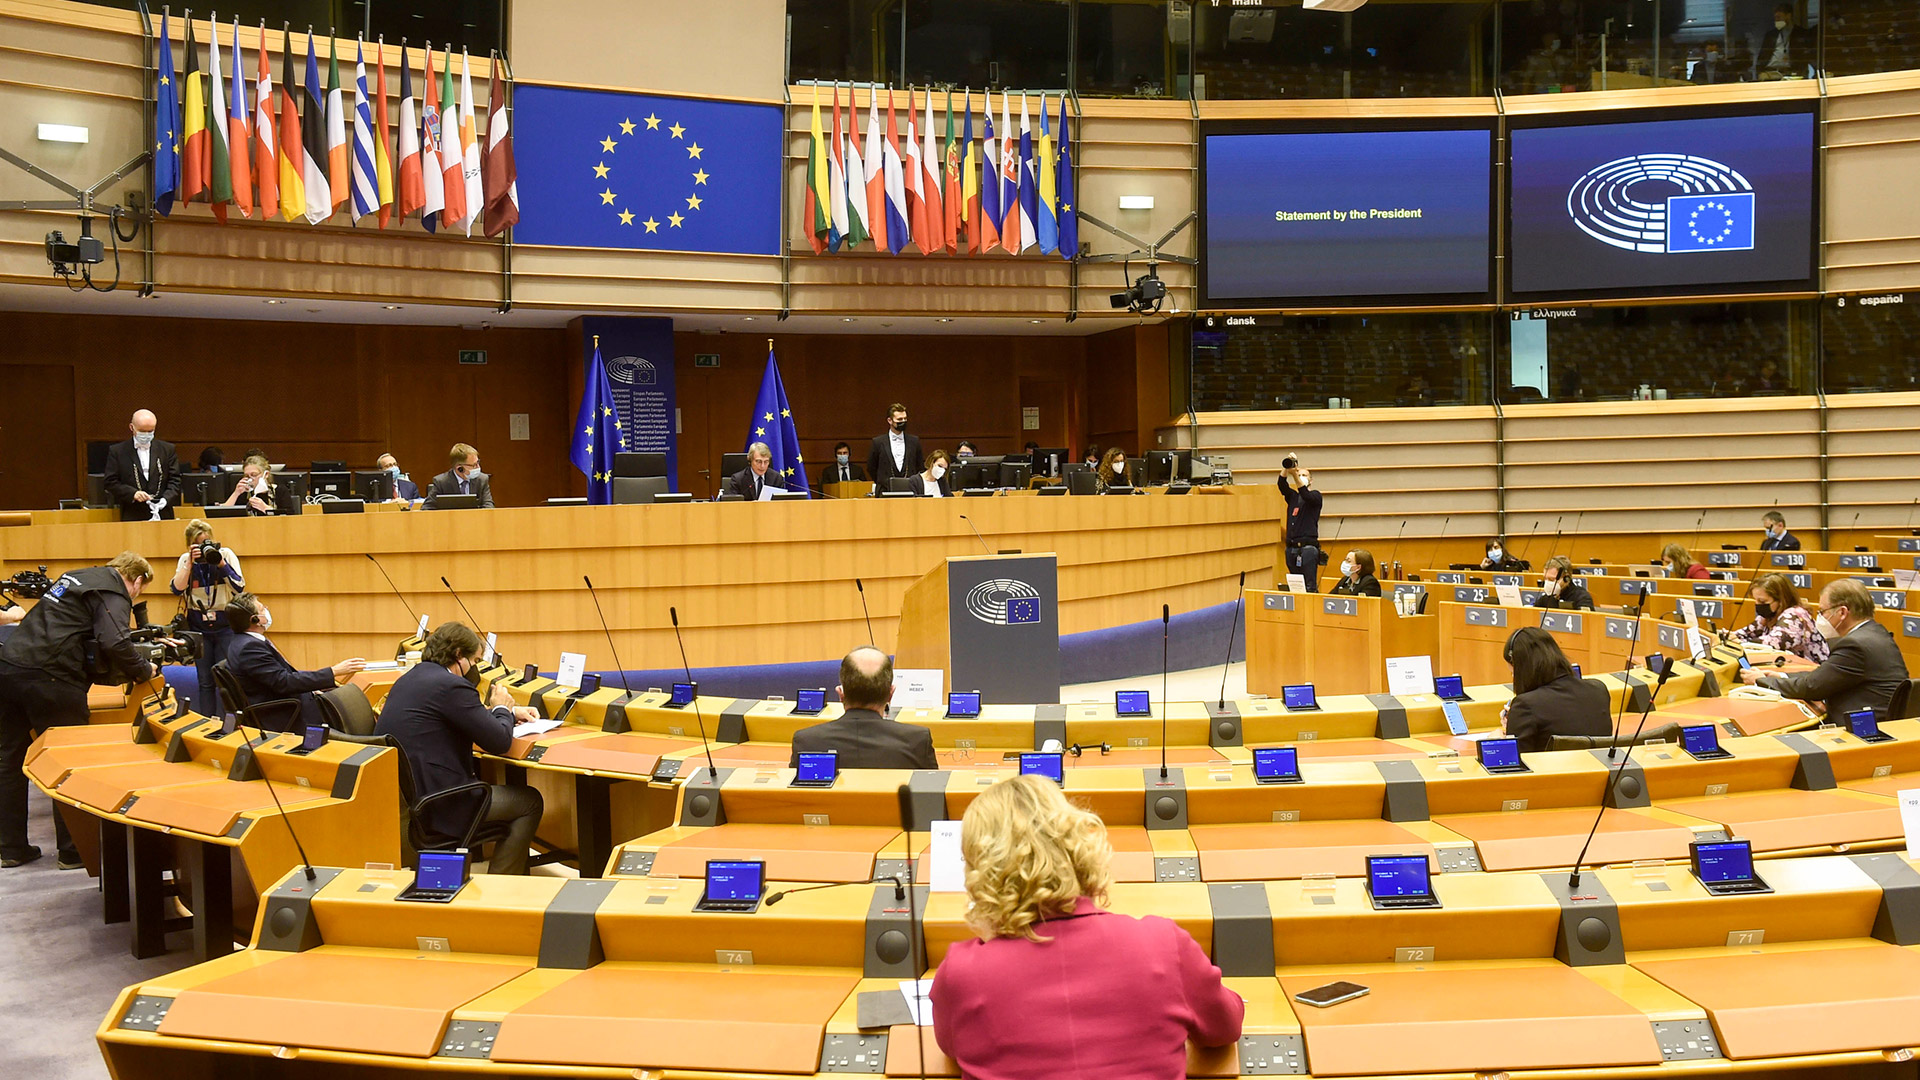 Κ. Τσουτσοπλίδης στο ΕΡΤΝews: Το διακύβευμα των ευρωεκλογών είναι να σώσουμε την ουσία της δημοκρατίας στην Ευρώπη